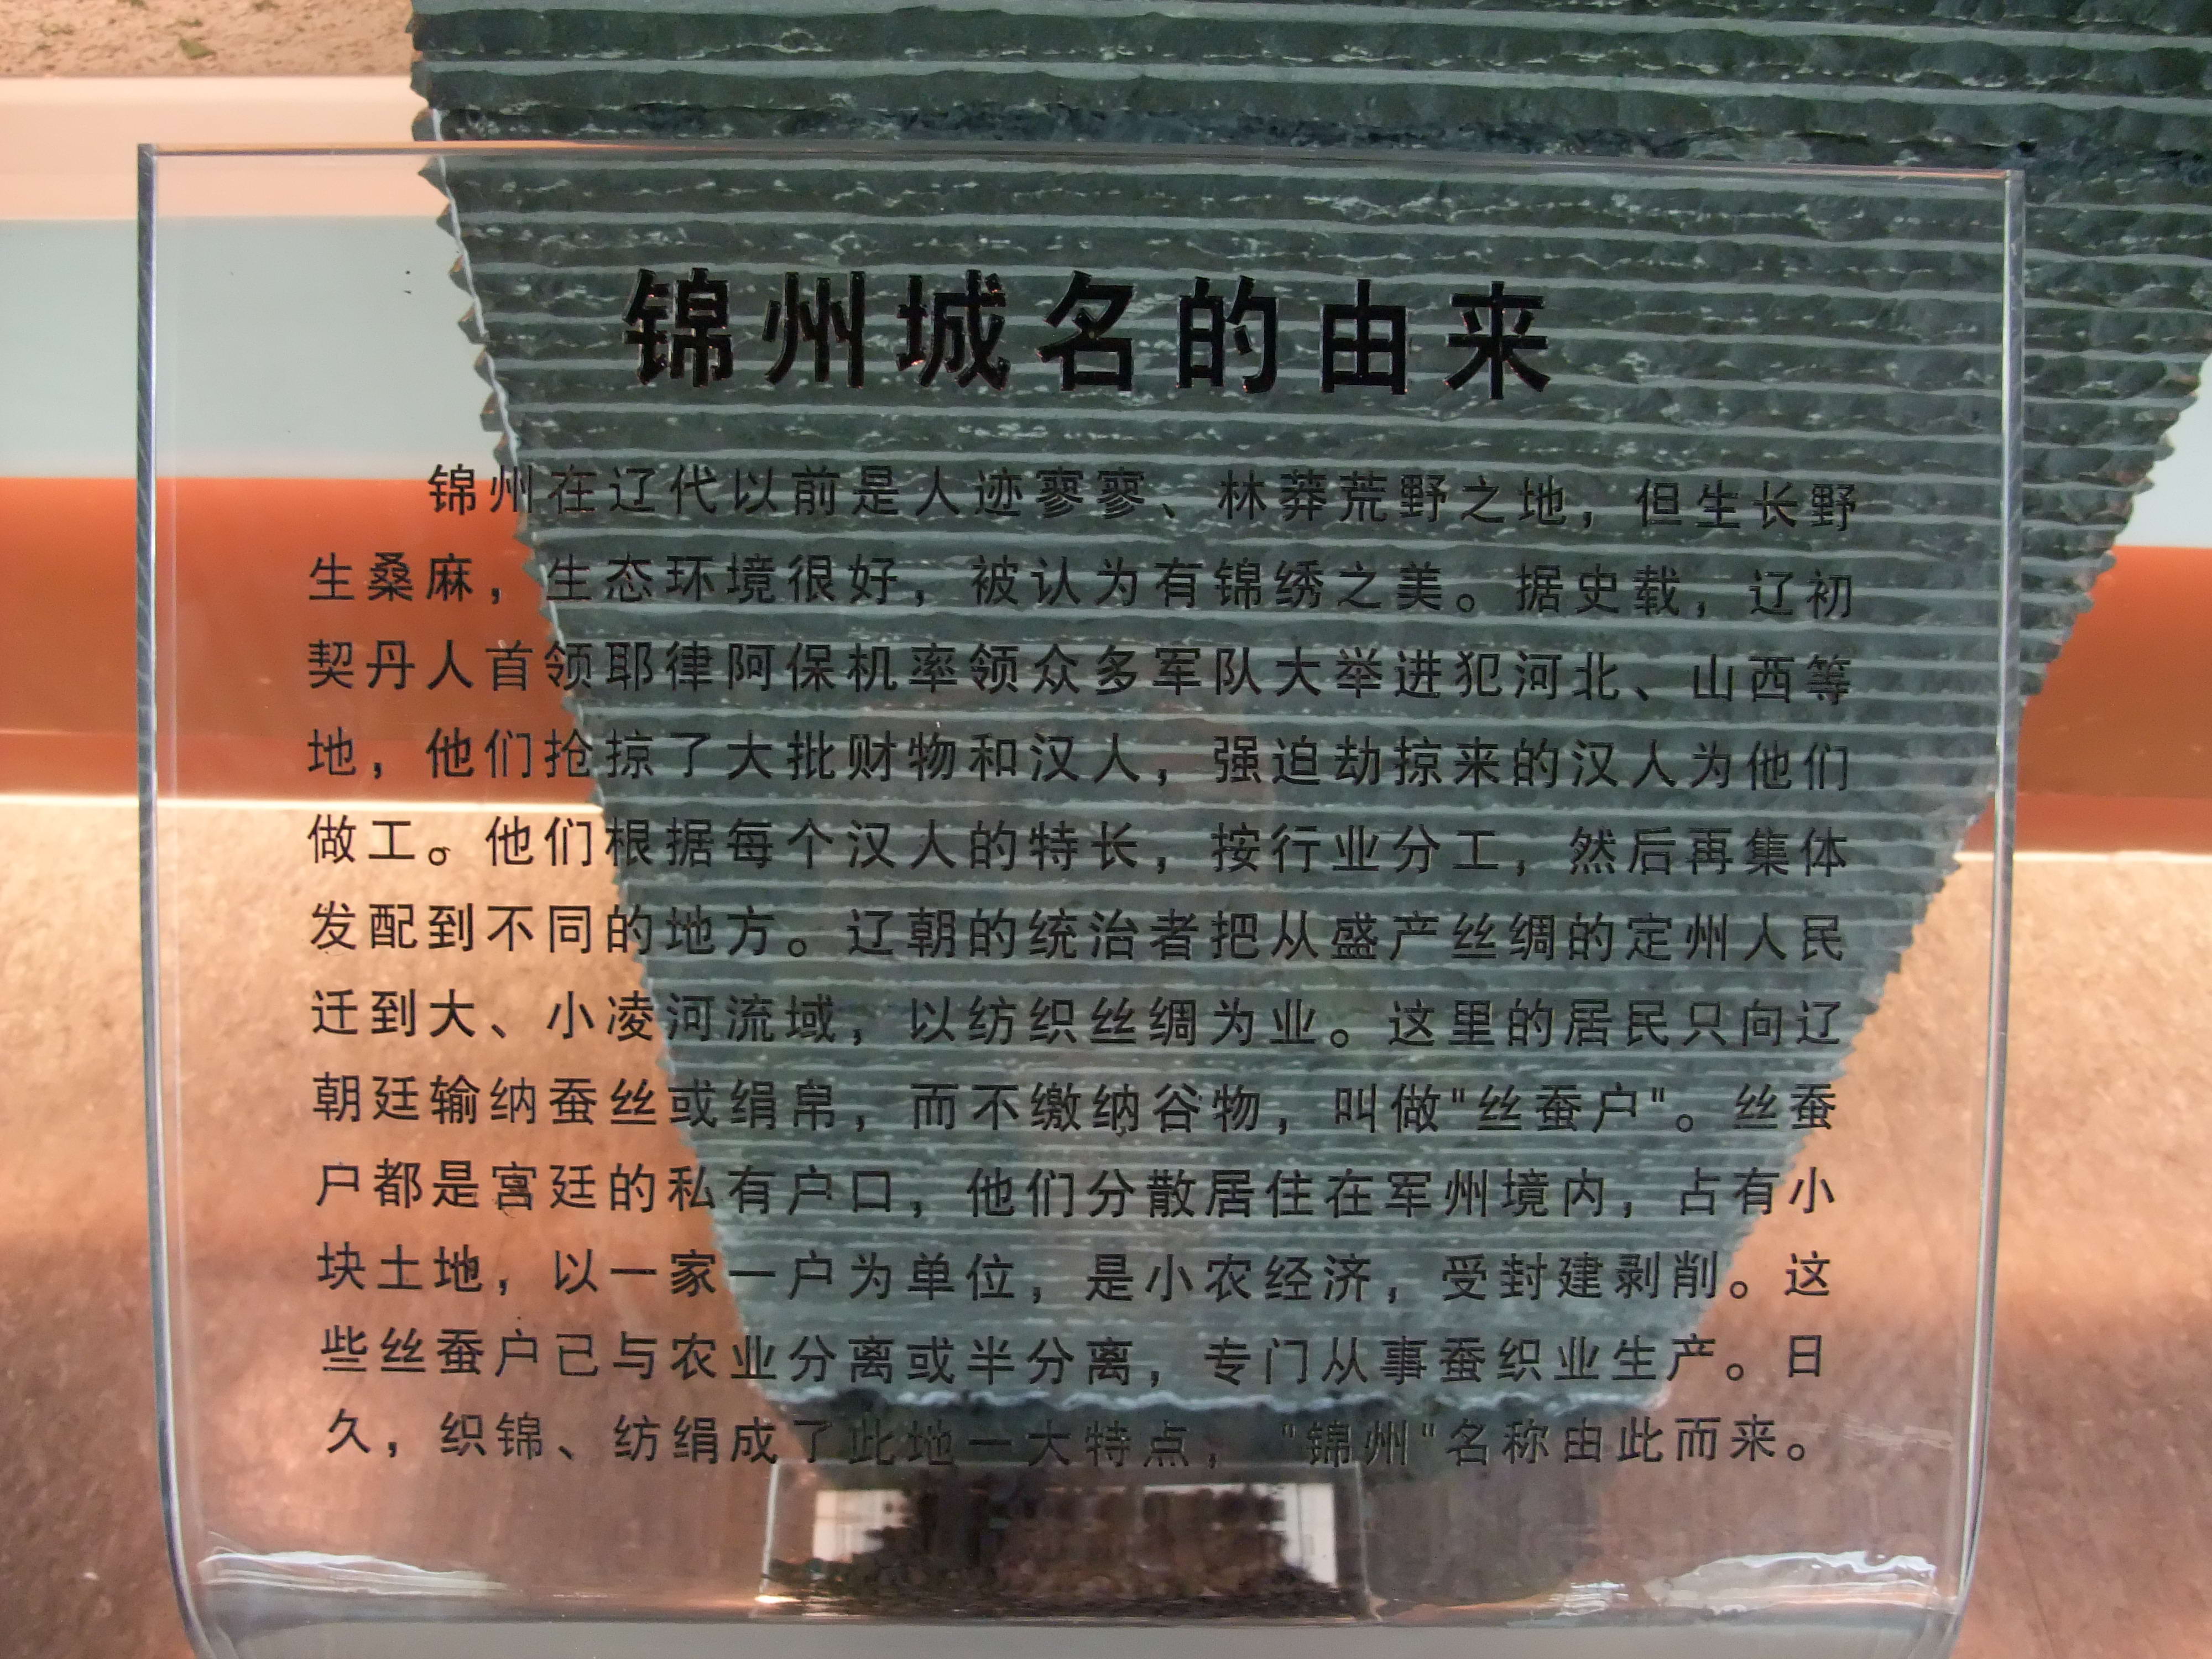 锦州博物馆的简介图片